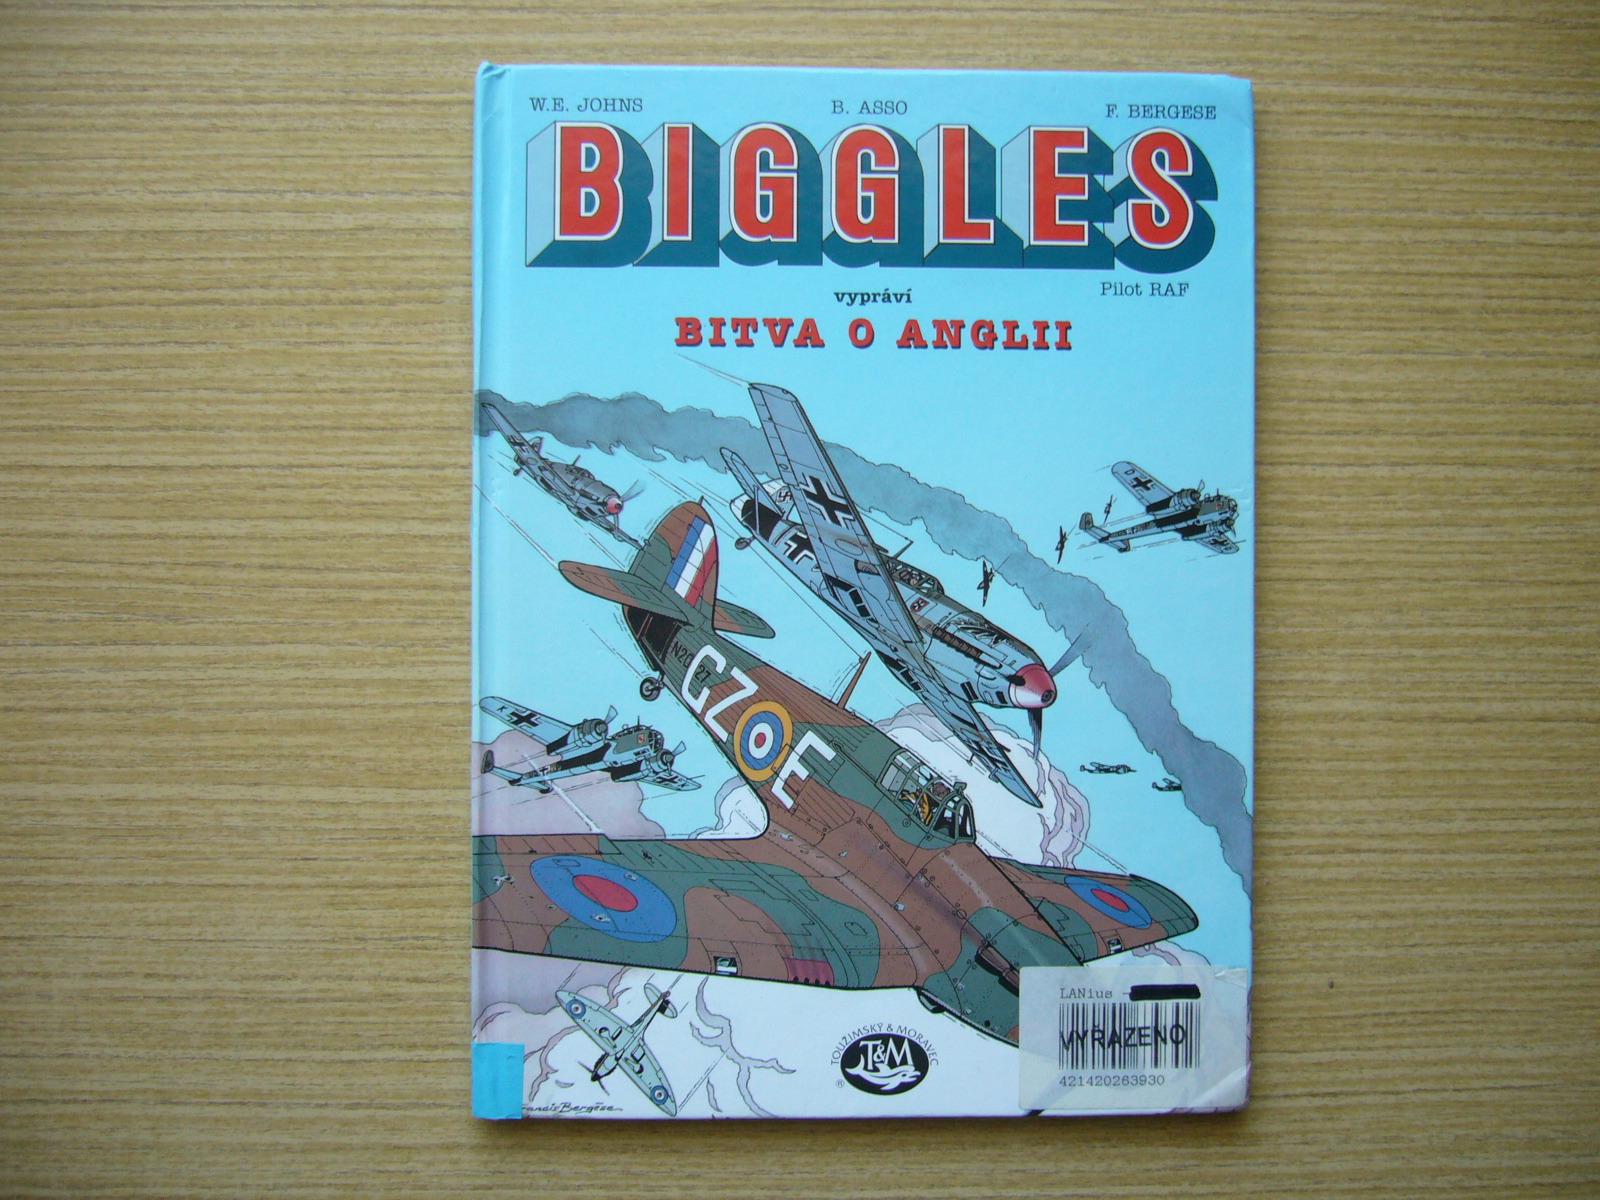 Johns, Asso, Bergese - Biggles rozpráva: Bitka o Anglicku | 1997 -a - Knihy a časopisy